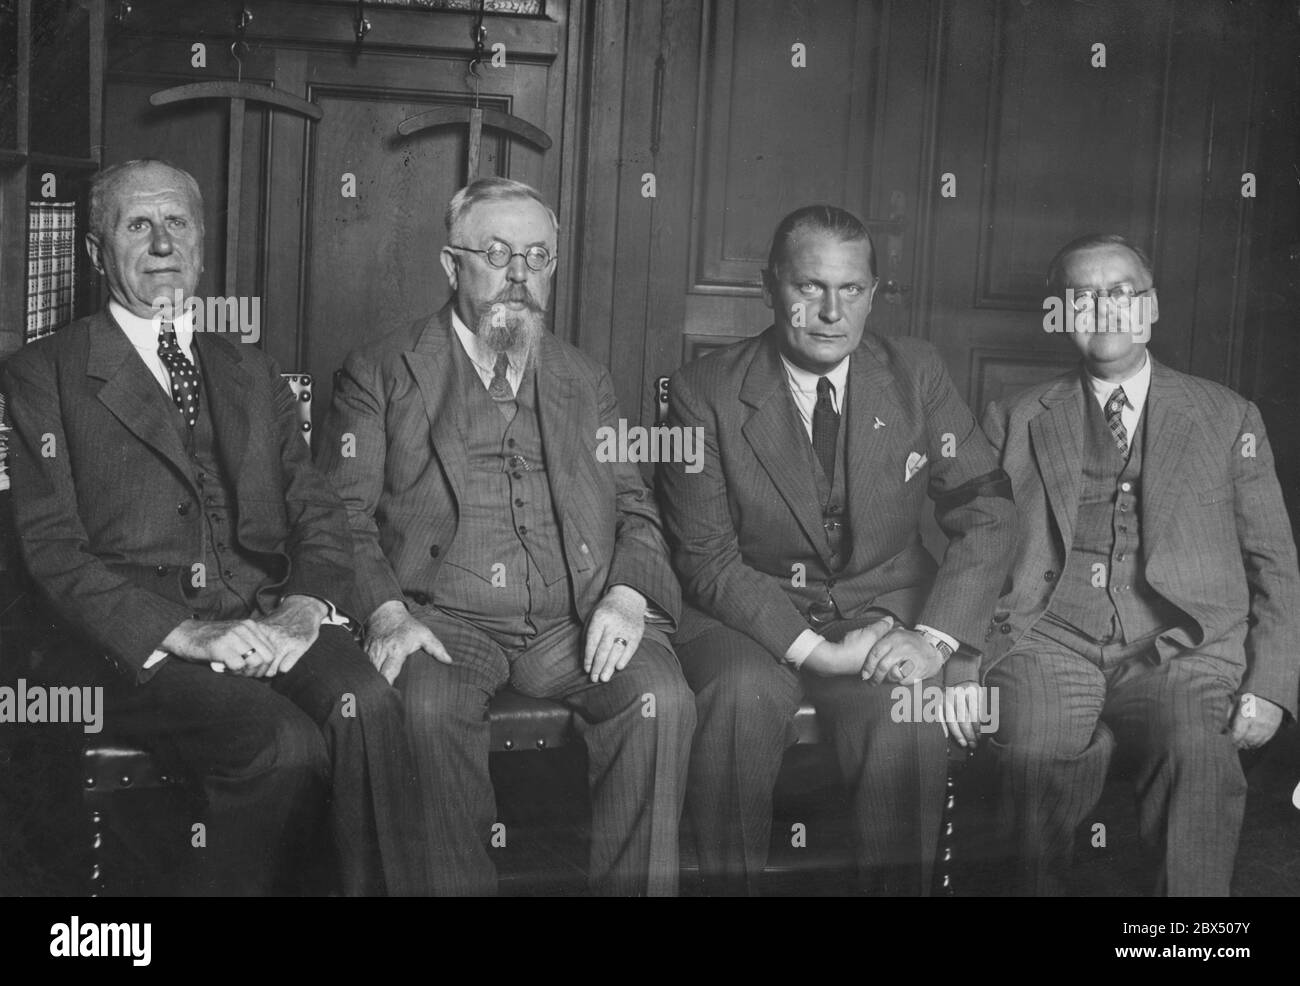 Les quatre présidents du Reichstag posent pour une photo commune (de gauche à droite) : le troisième vice-président Walther Graef (DNVP), le premier vice-président Thomas Esser (Zentrum), le président du Reichstag Hermann Goering (NSDAP) et le second vice-président Johann Rauch (BVP). Banque D'Images